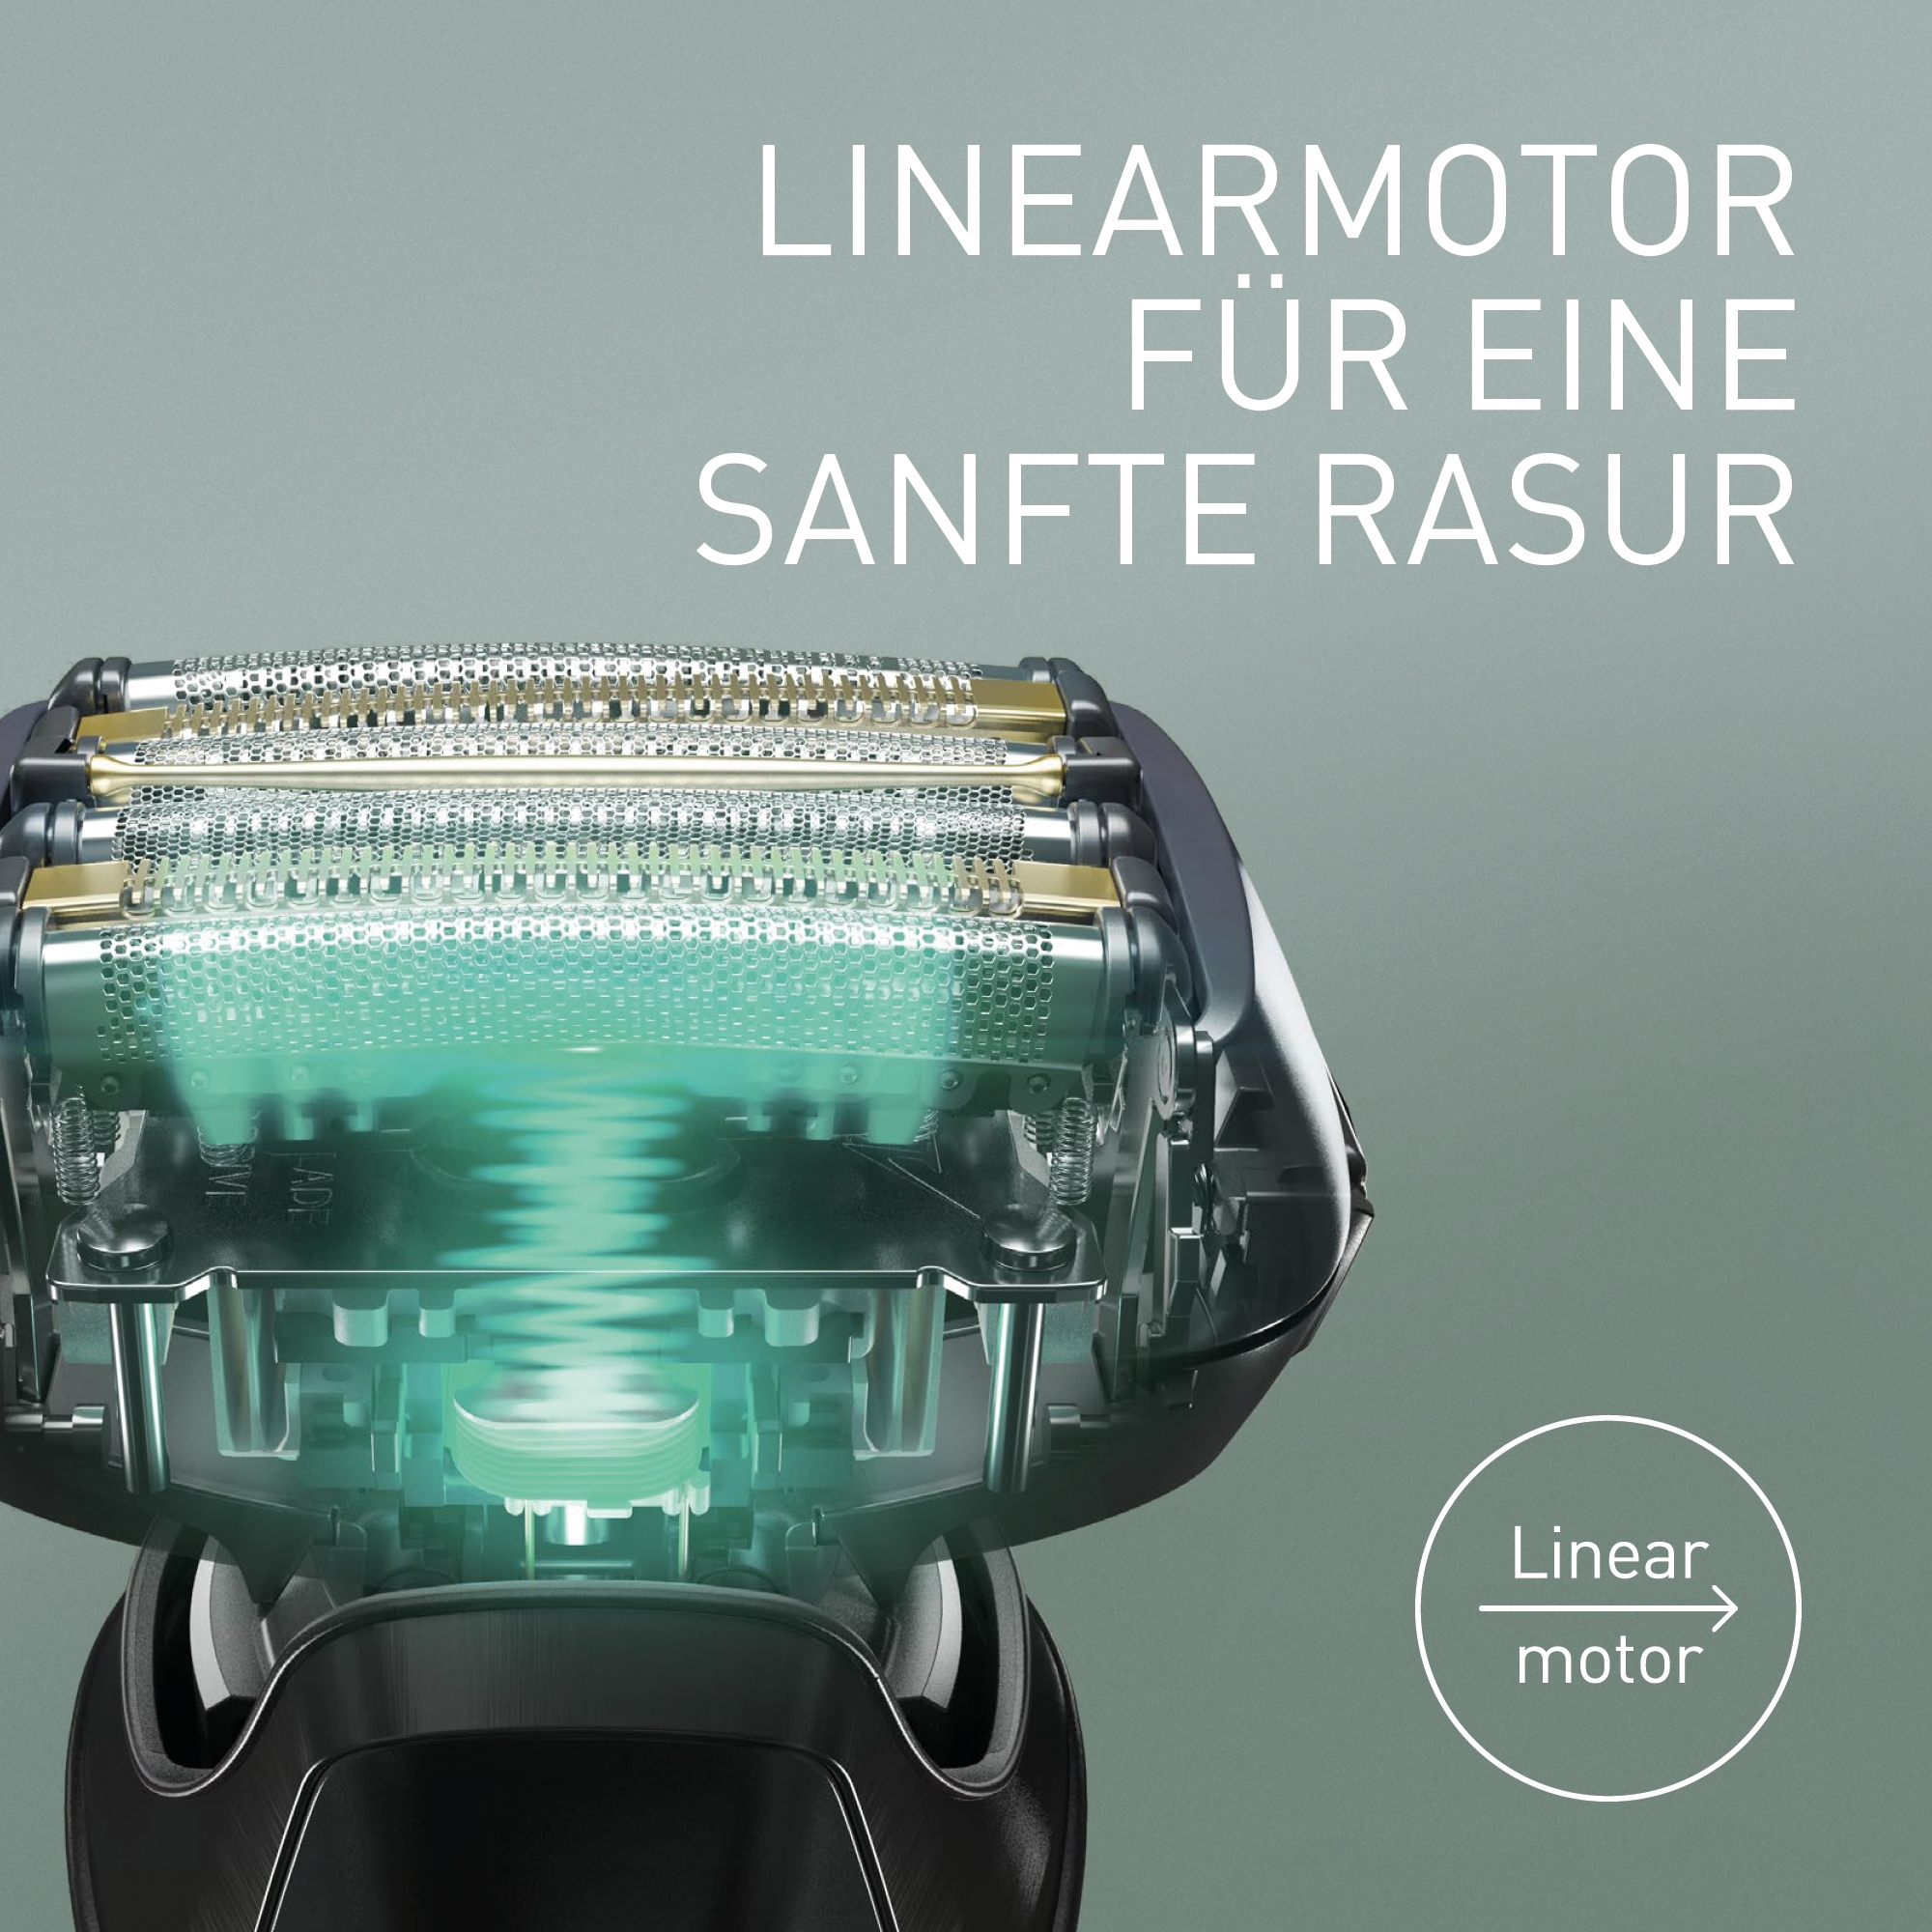 Panasonic Elektrorasierer »Series 900+ Premium Rasierer ES-LS9A«, Reinigungsstation, Langhaartrimmer